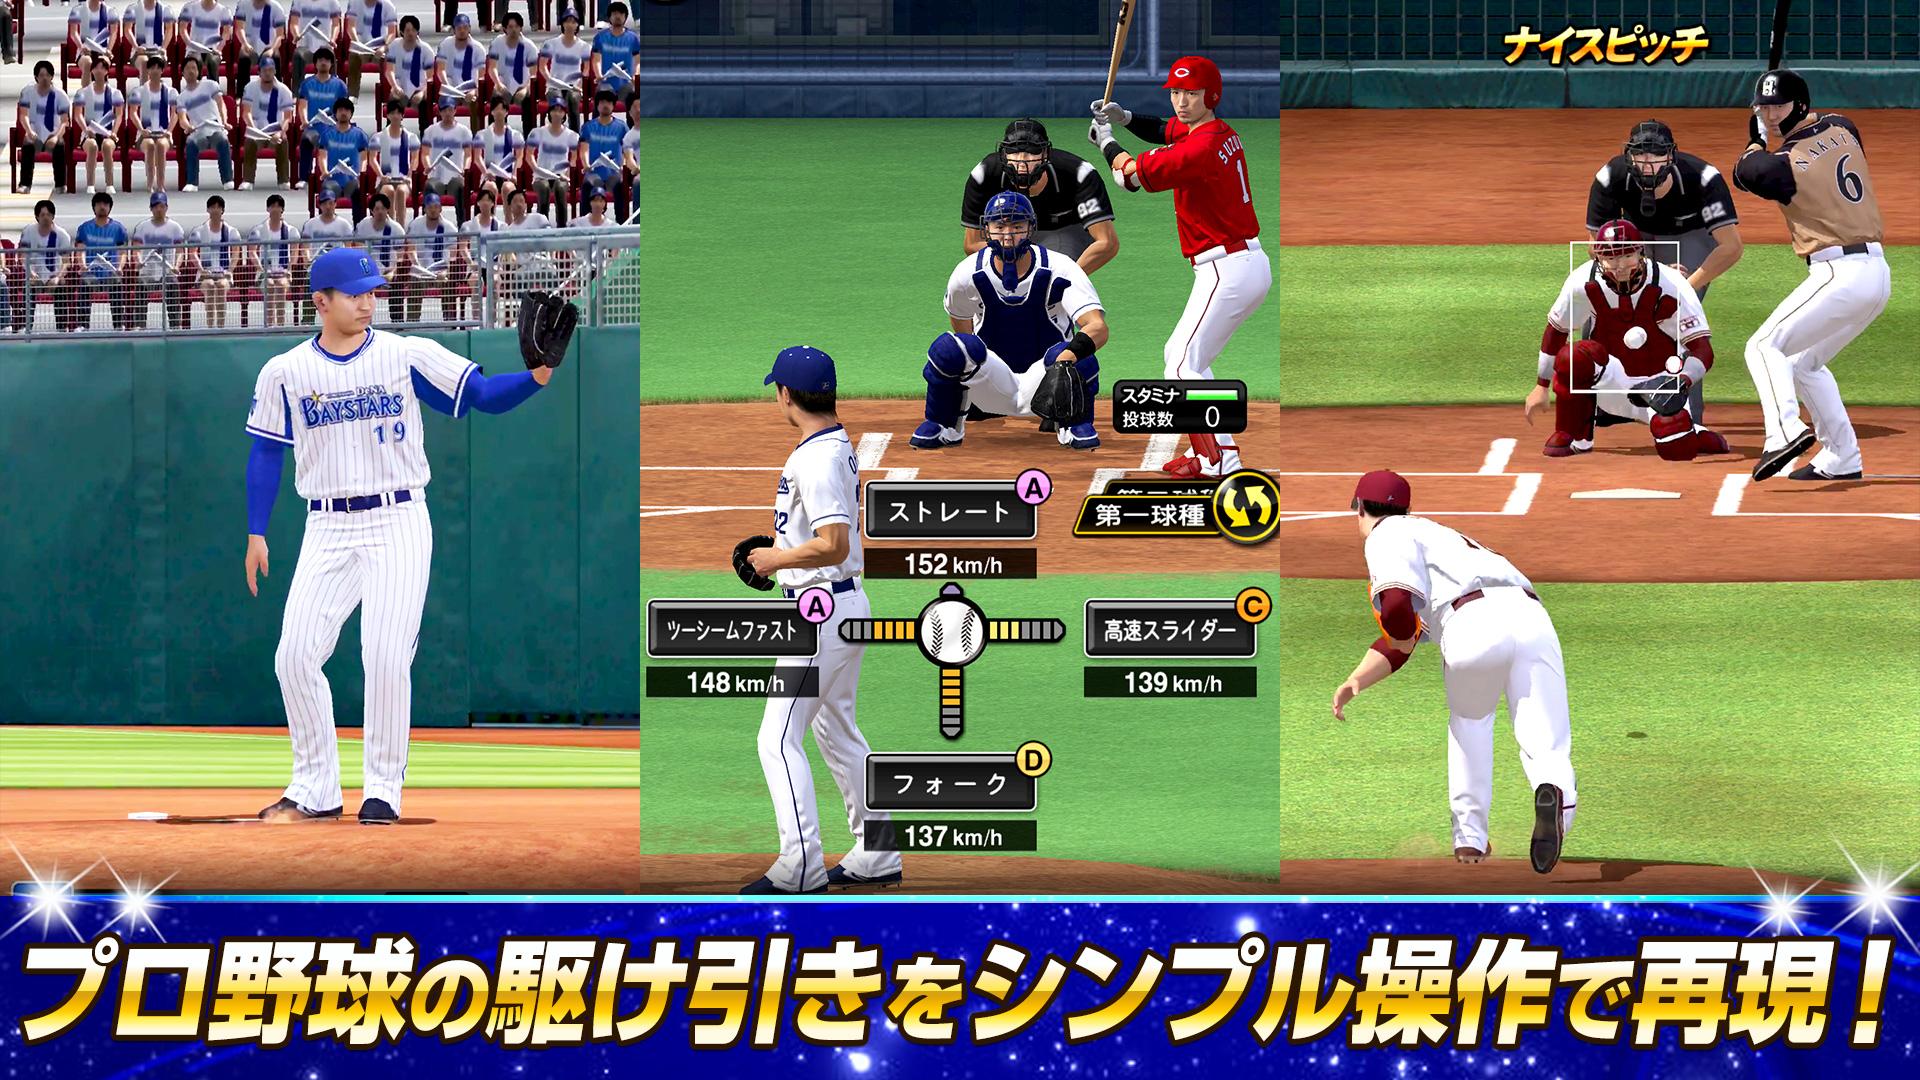 プロ野球スピリッツa安卓下载 安卓版apk 免费下载